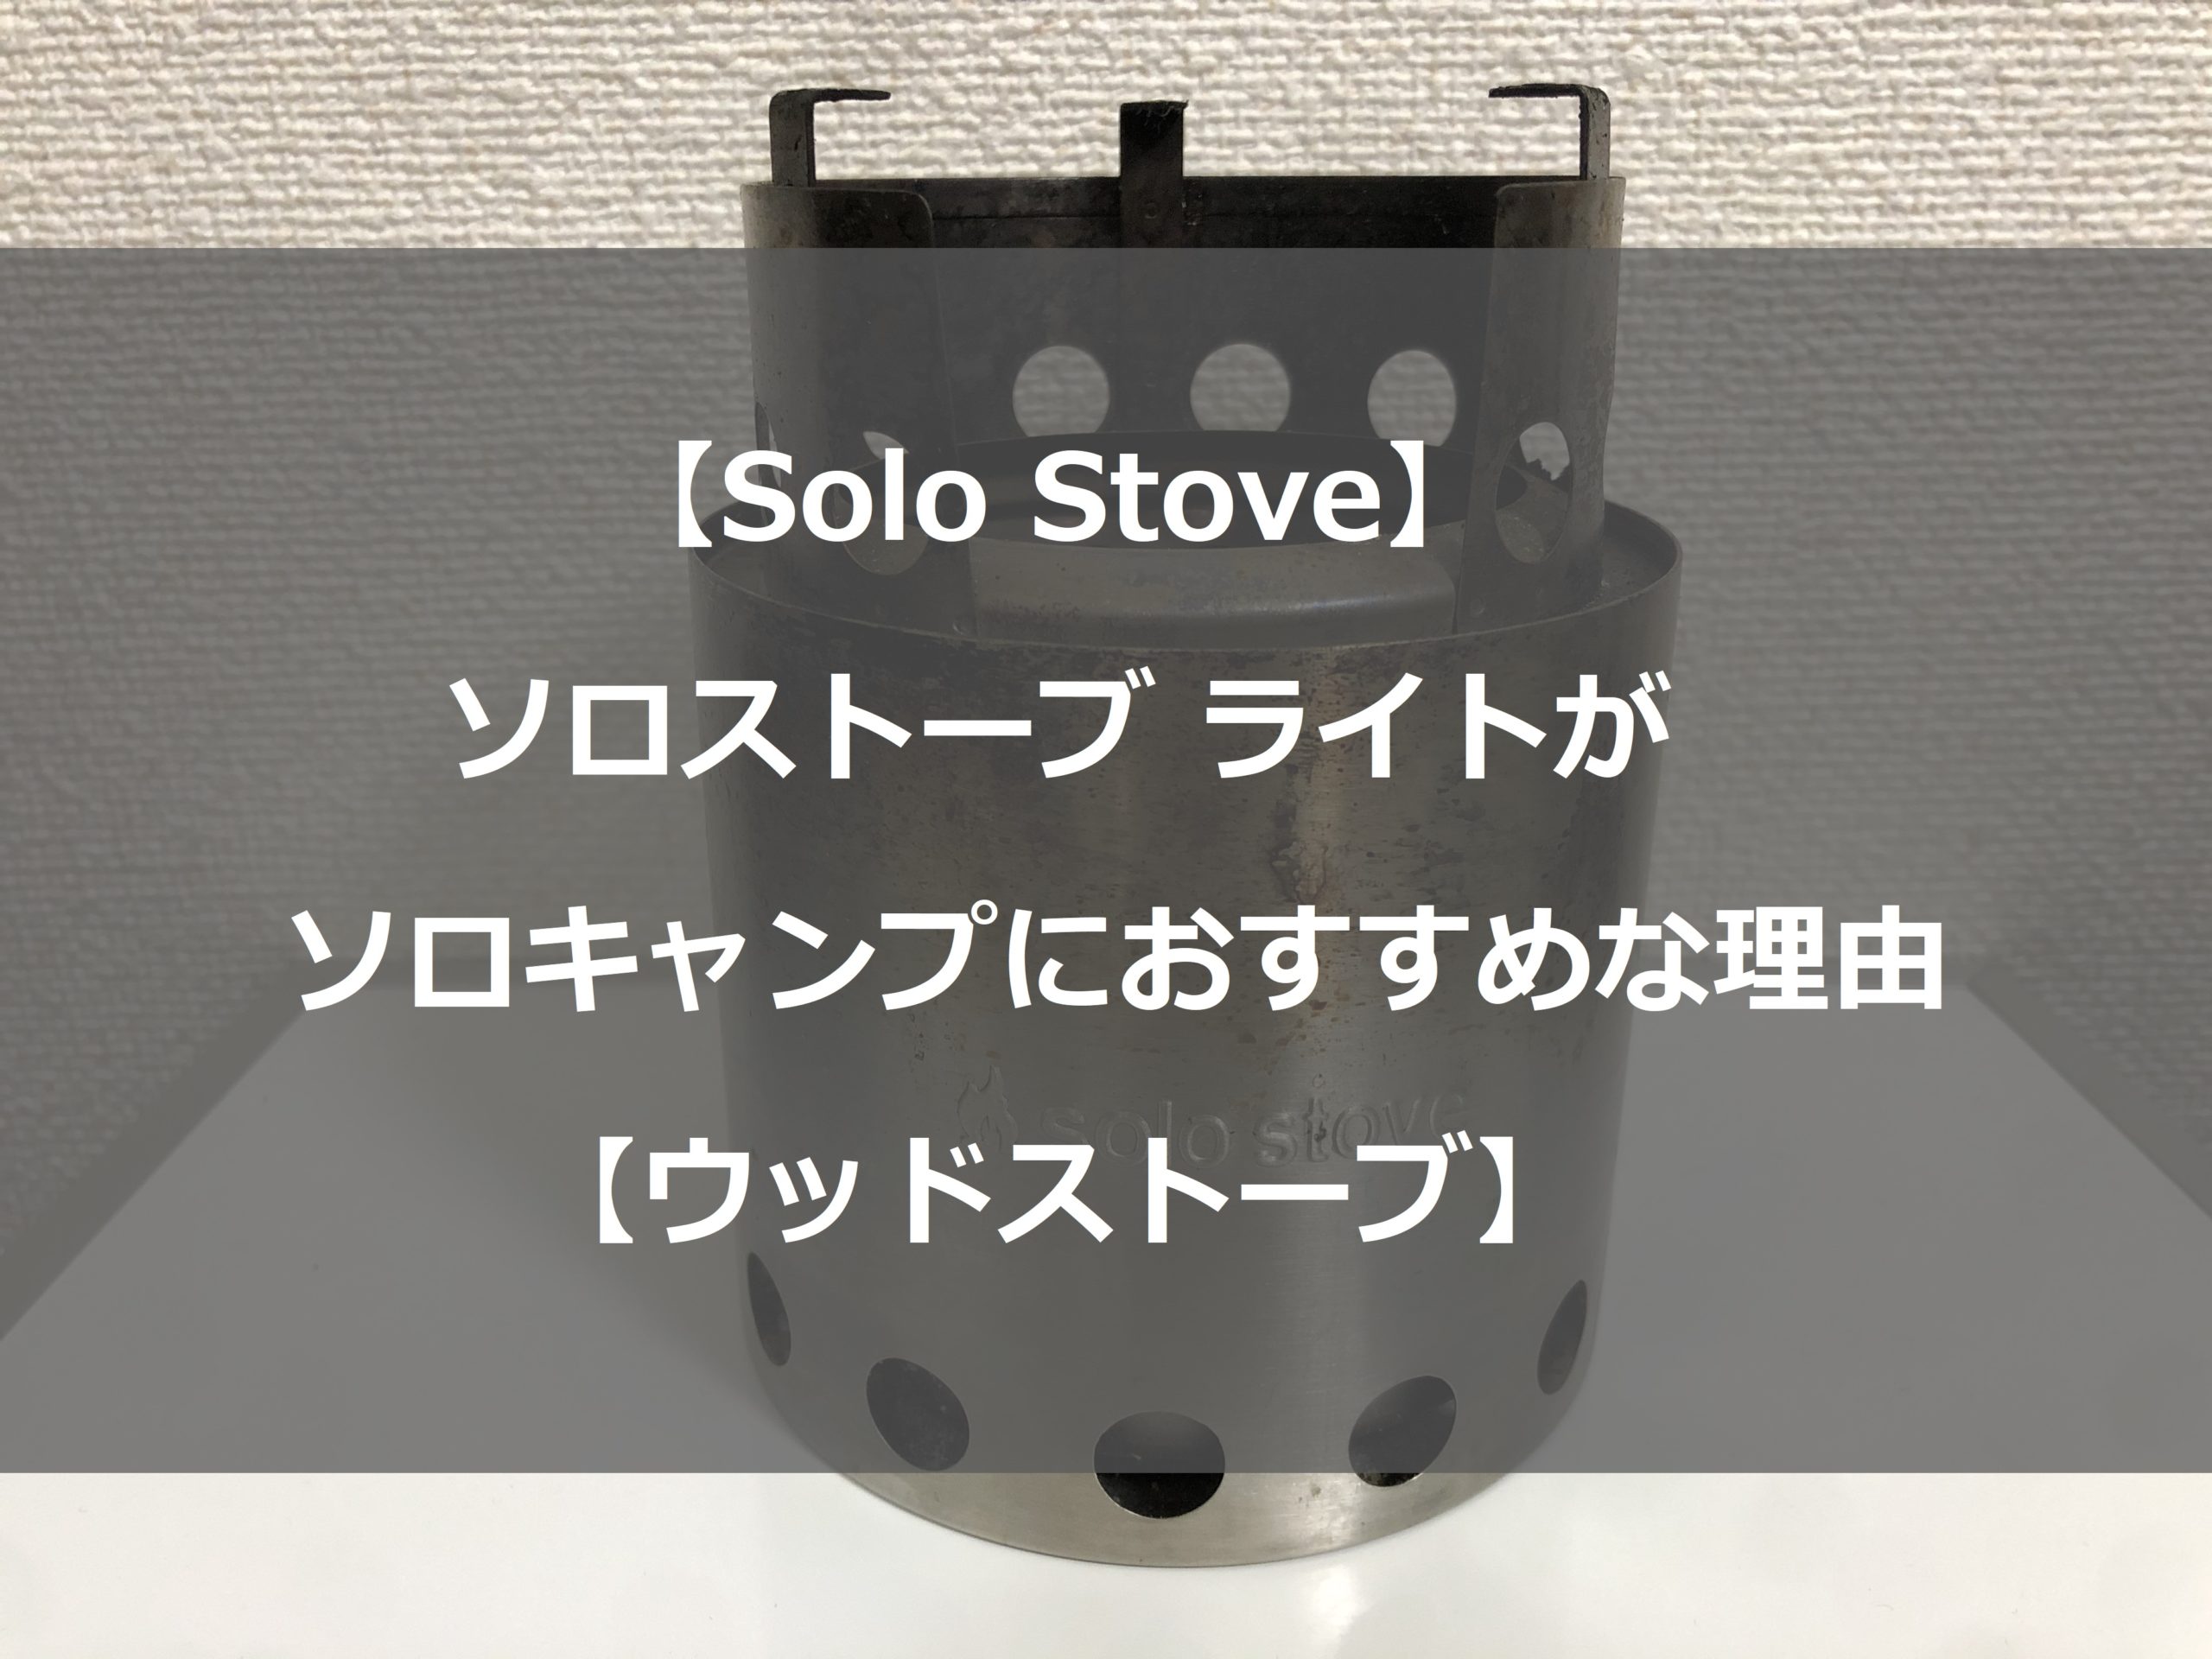 Solo Stove】ソロストーブ ライトがソロキャンプにおすすめな理由【ウッドストーブ】 | フィールド設計